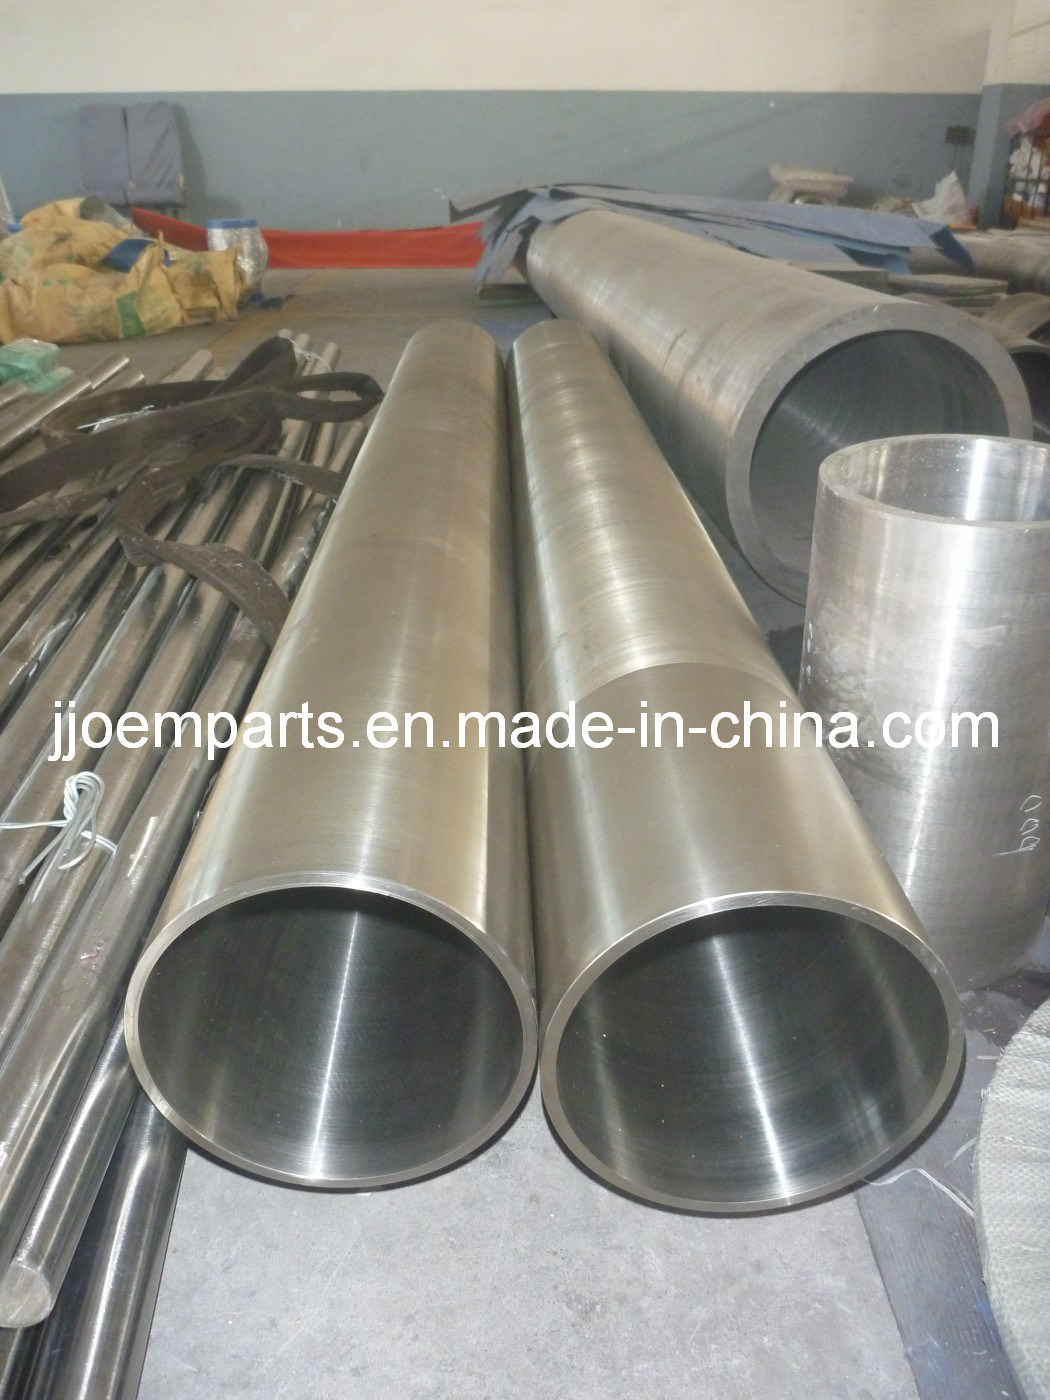 SA-765-Gr. IV/A 765/A 765M Gr. 2/ASTM SA765-II/SA 765 Gr. II Forged Forging Tubes Pipes Piping tubings sleeves Bushes shells Cylinder barrels